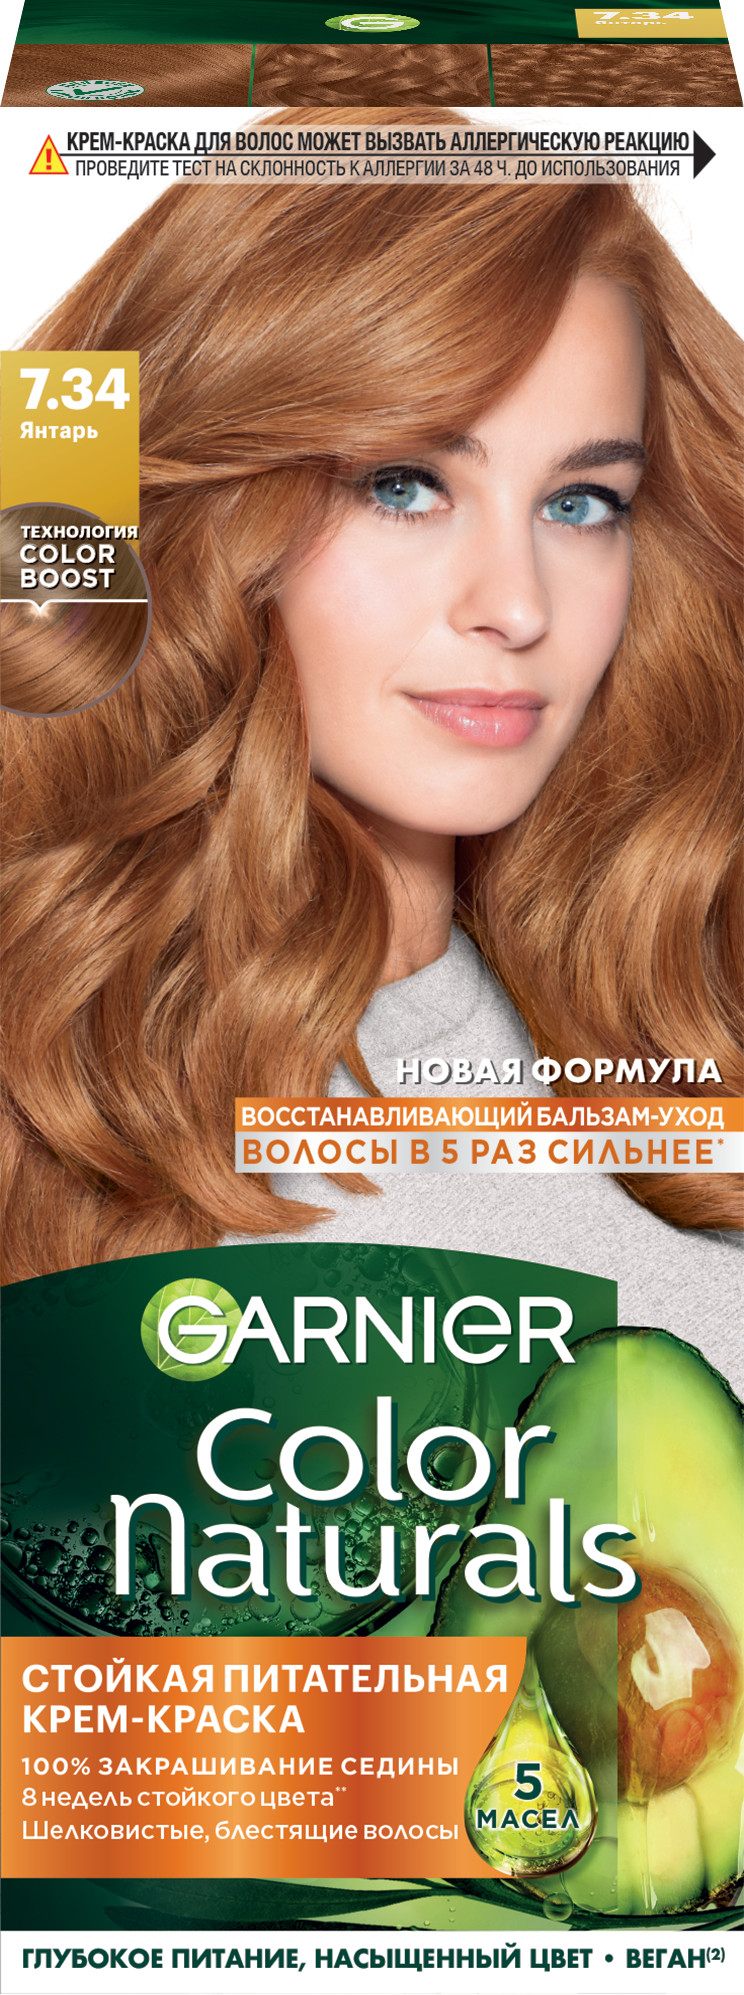 Garnier Стойкая питательная крем-краска для волос Color Naturals, оттенок 7.34 Янтарь